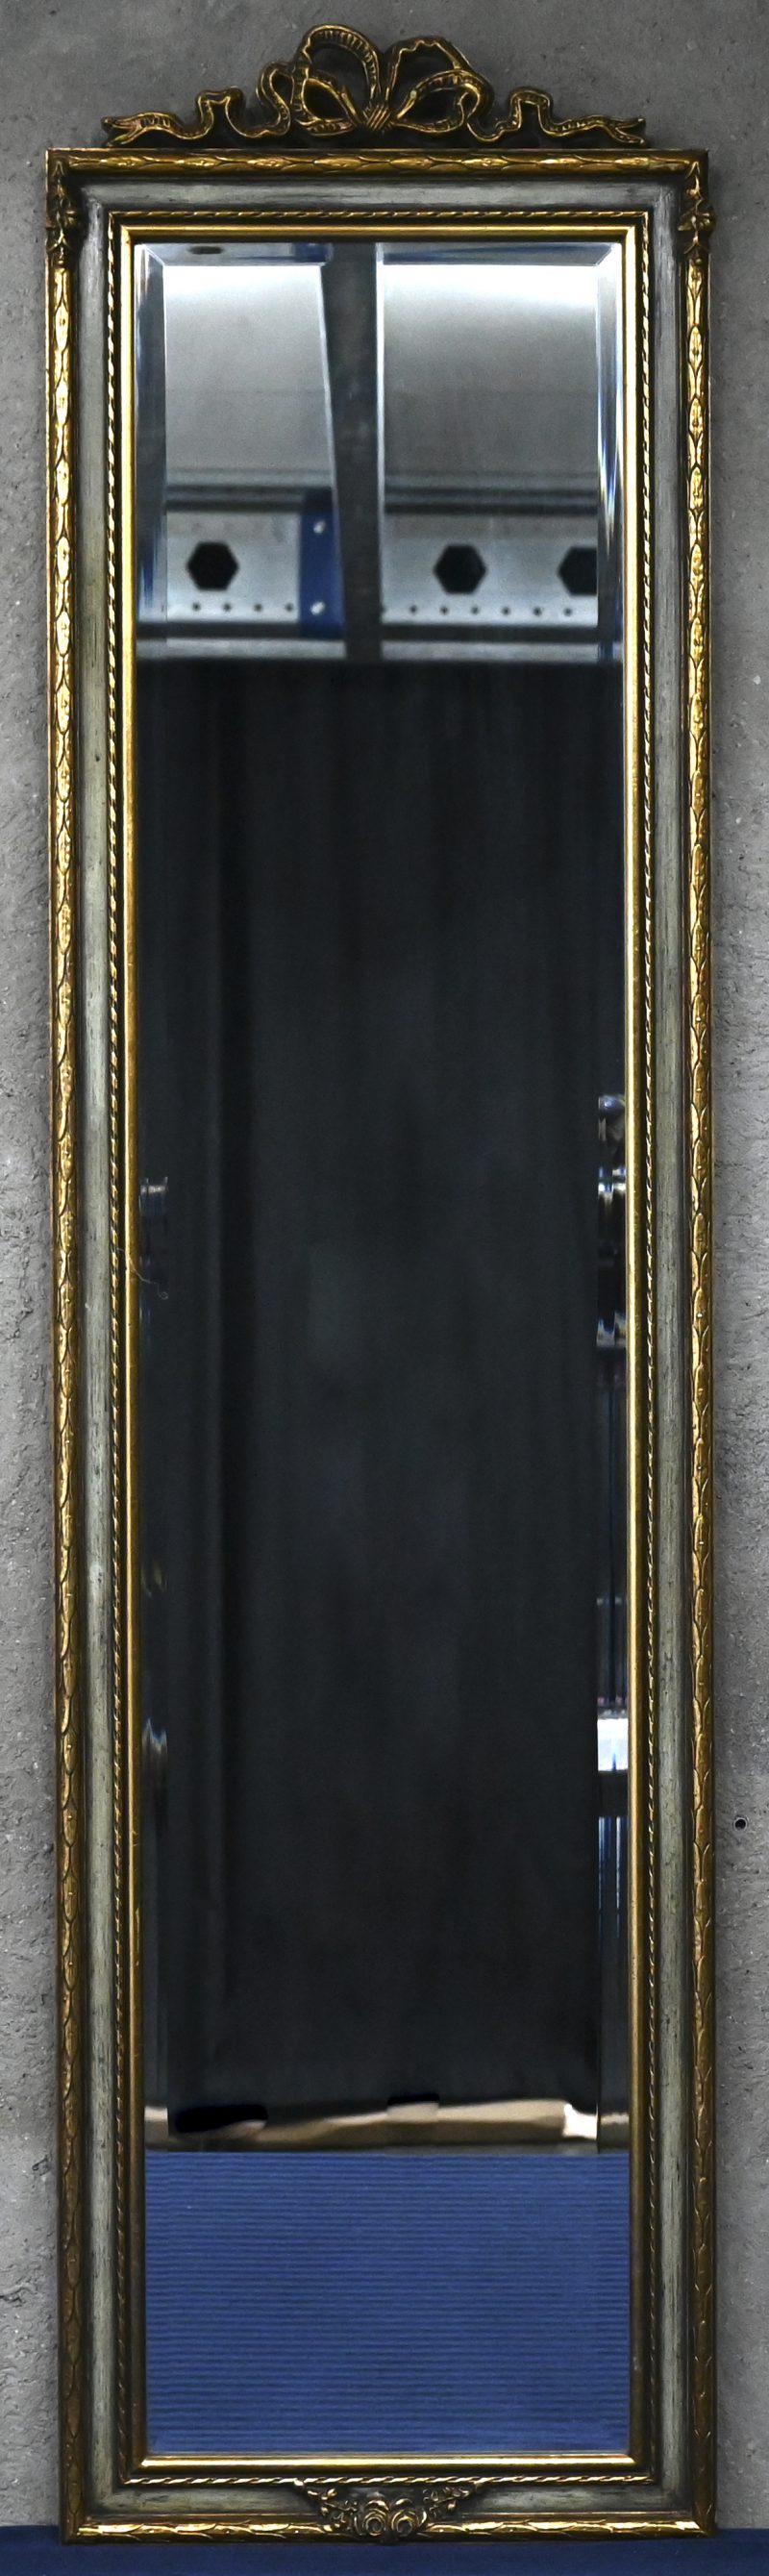 Een langwerpige spiegel met bovenaan een strikmotief en onderaan een kleine guirlande, deels verguld.